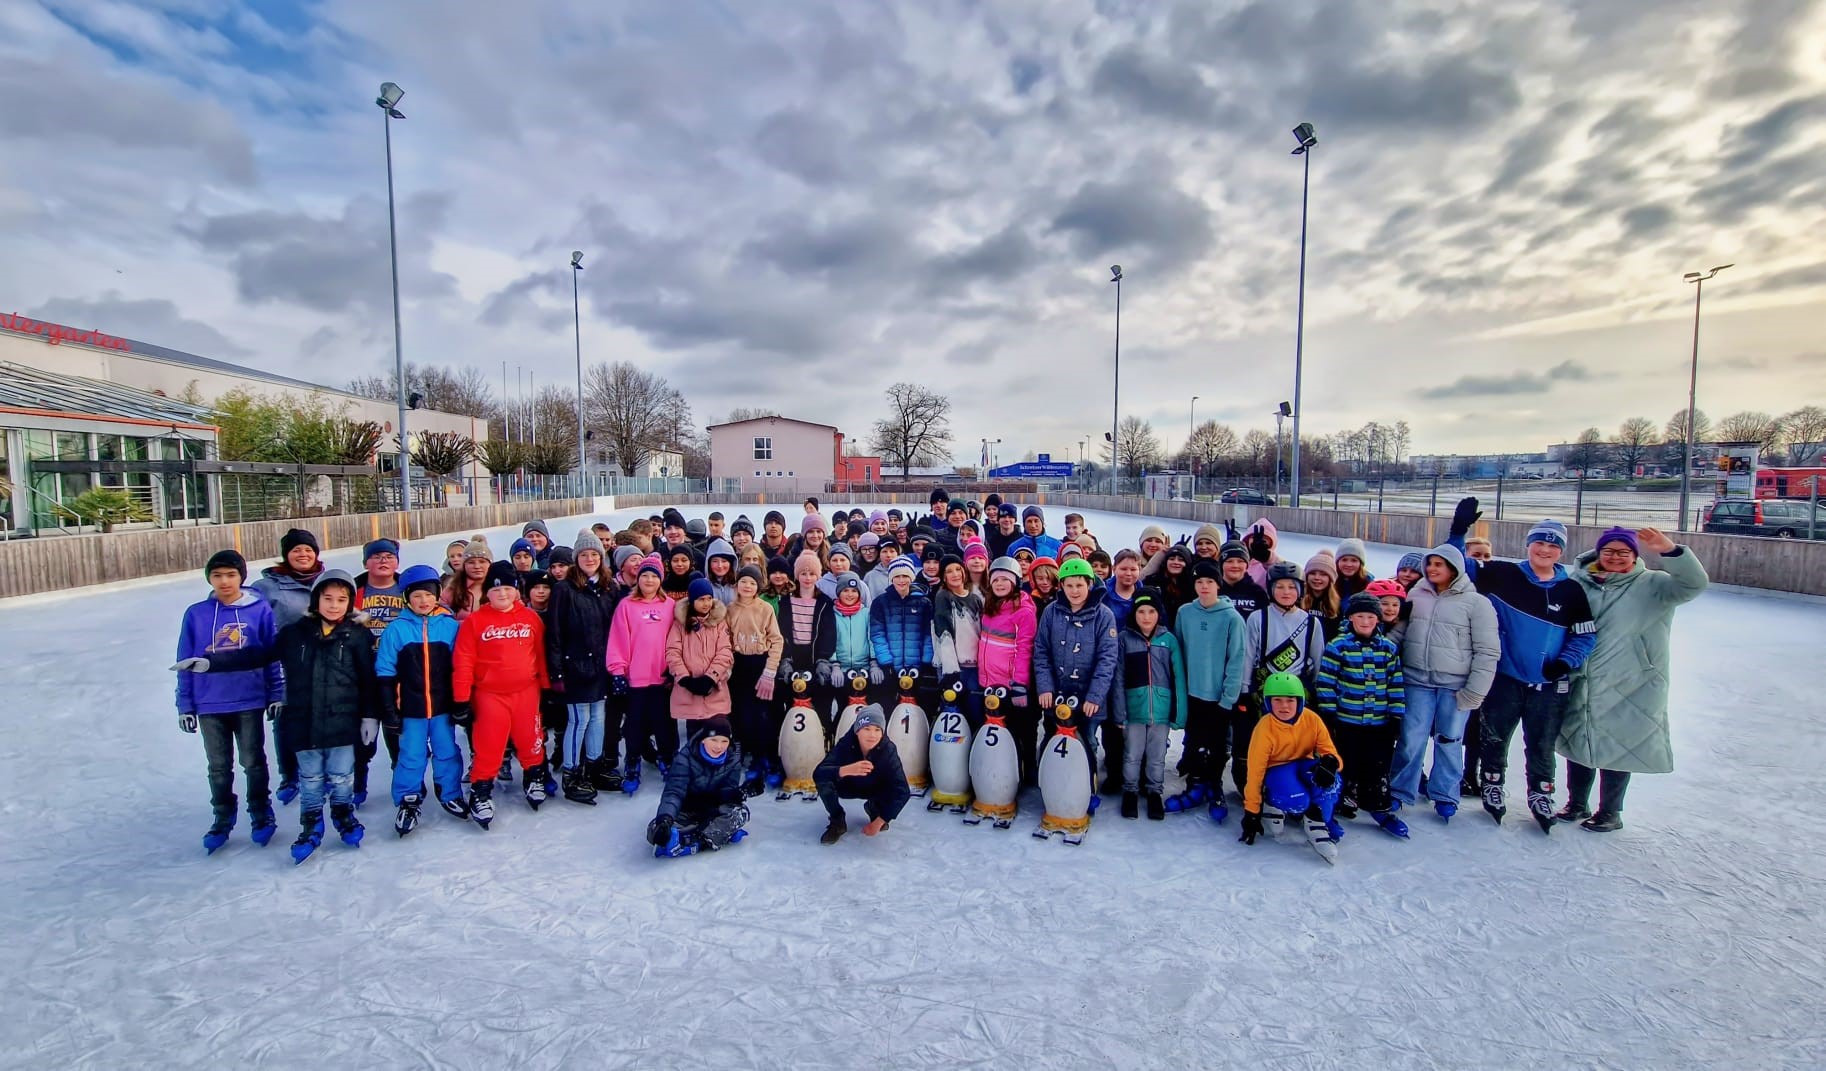 Eislauftag der Mittelschule Tüßling - Bild 1